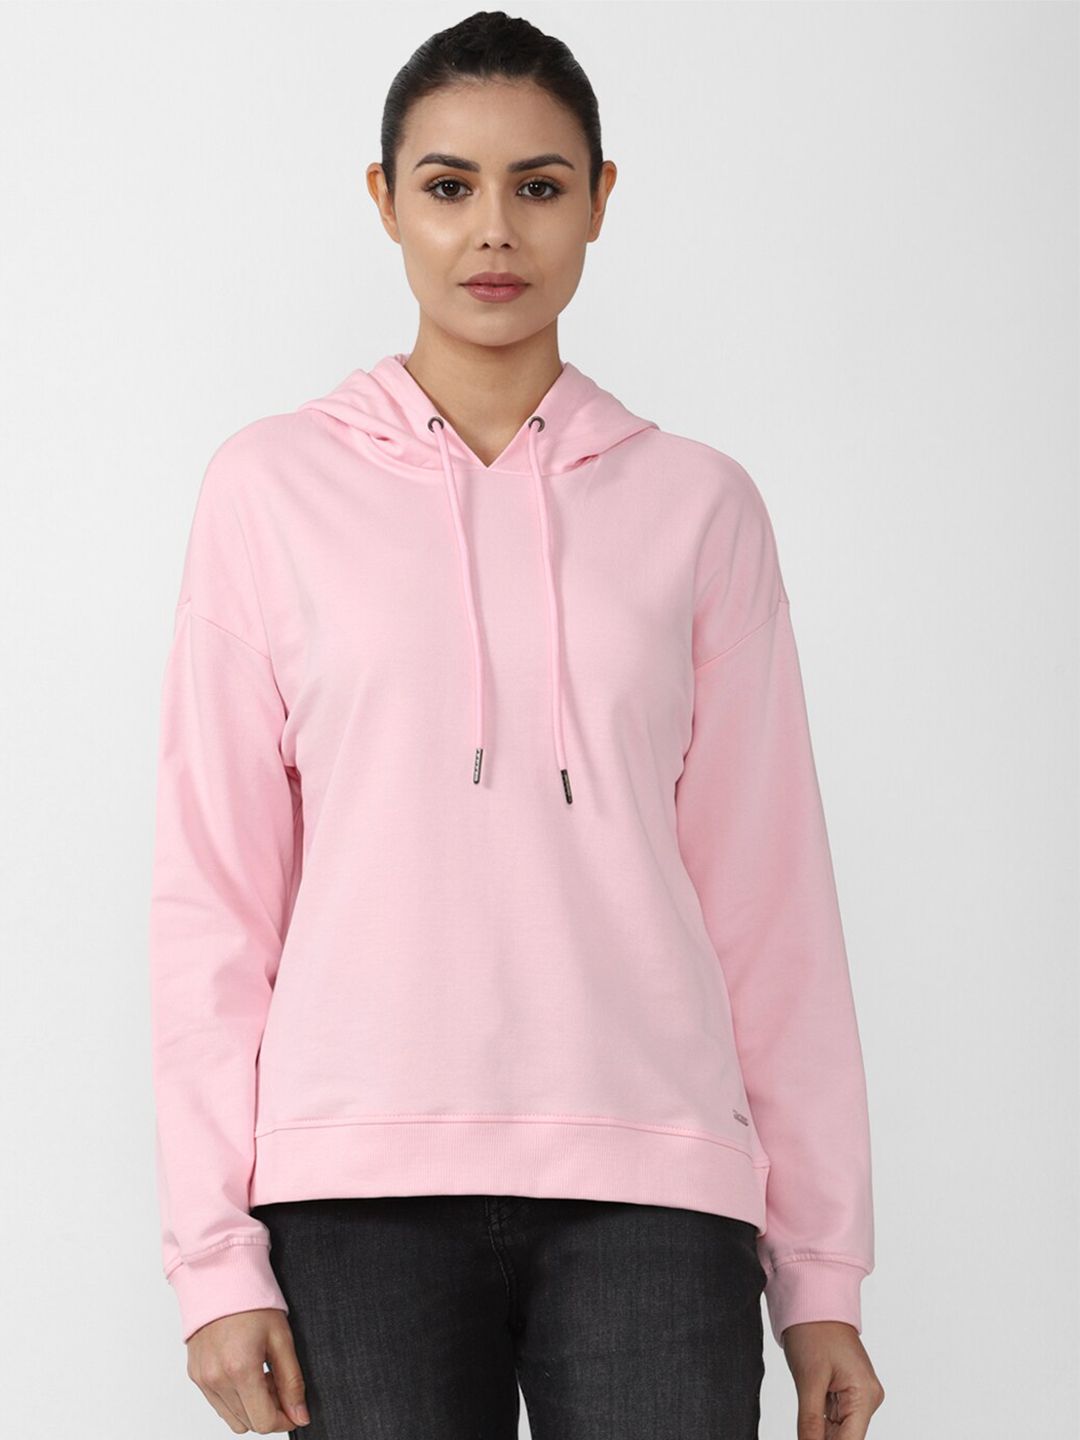 Van Heusen Woman Women Pink Hooded Sweatshirt Price in India